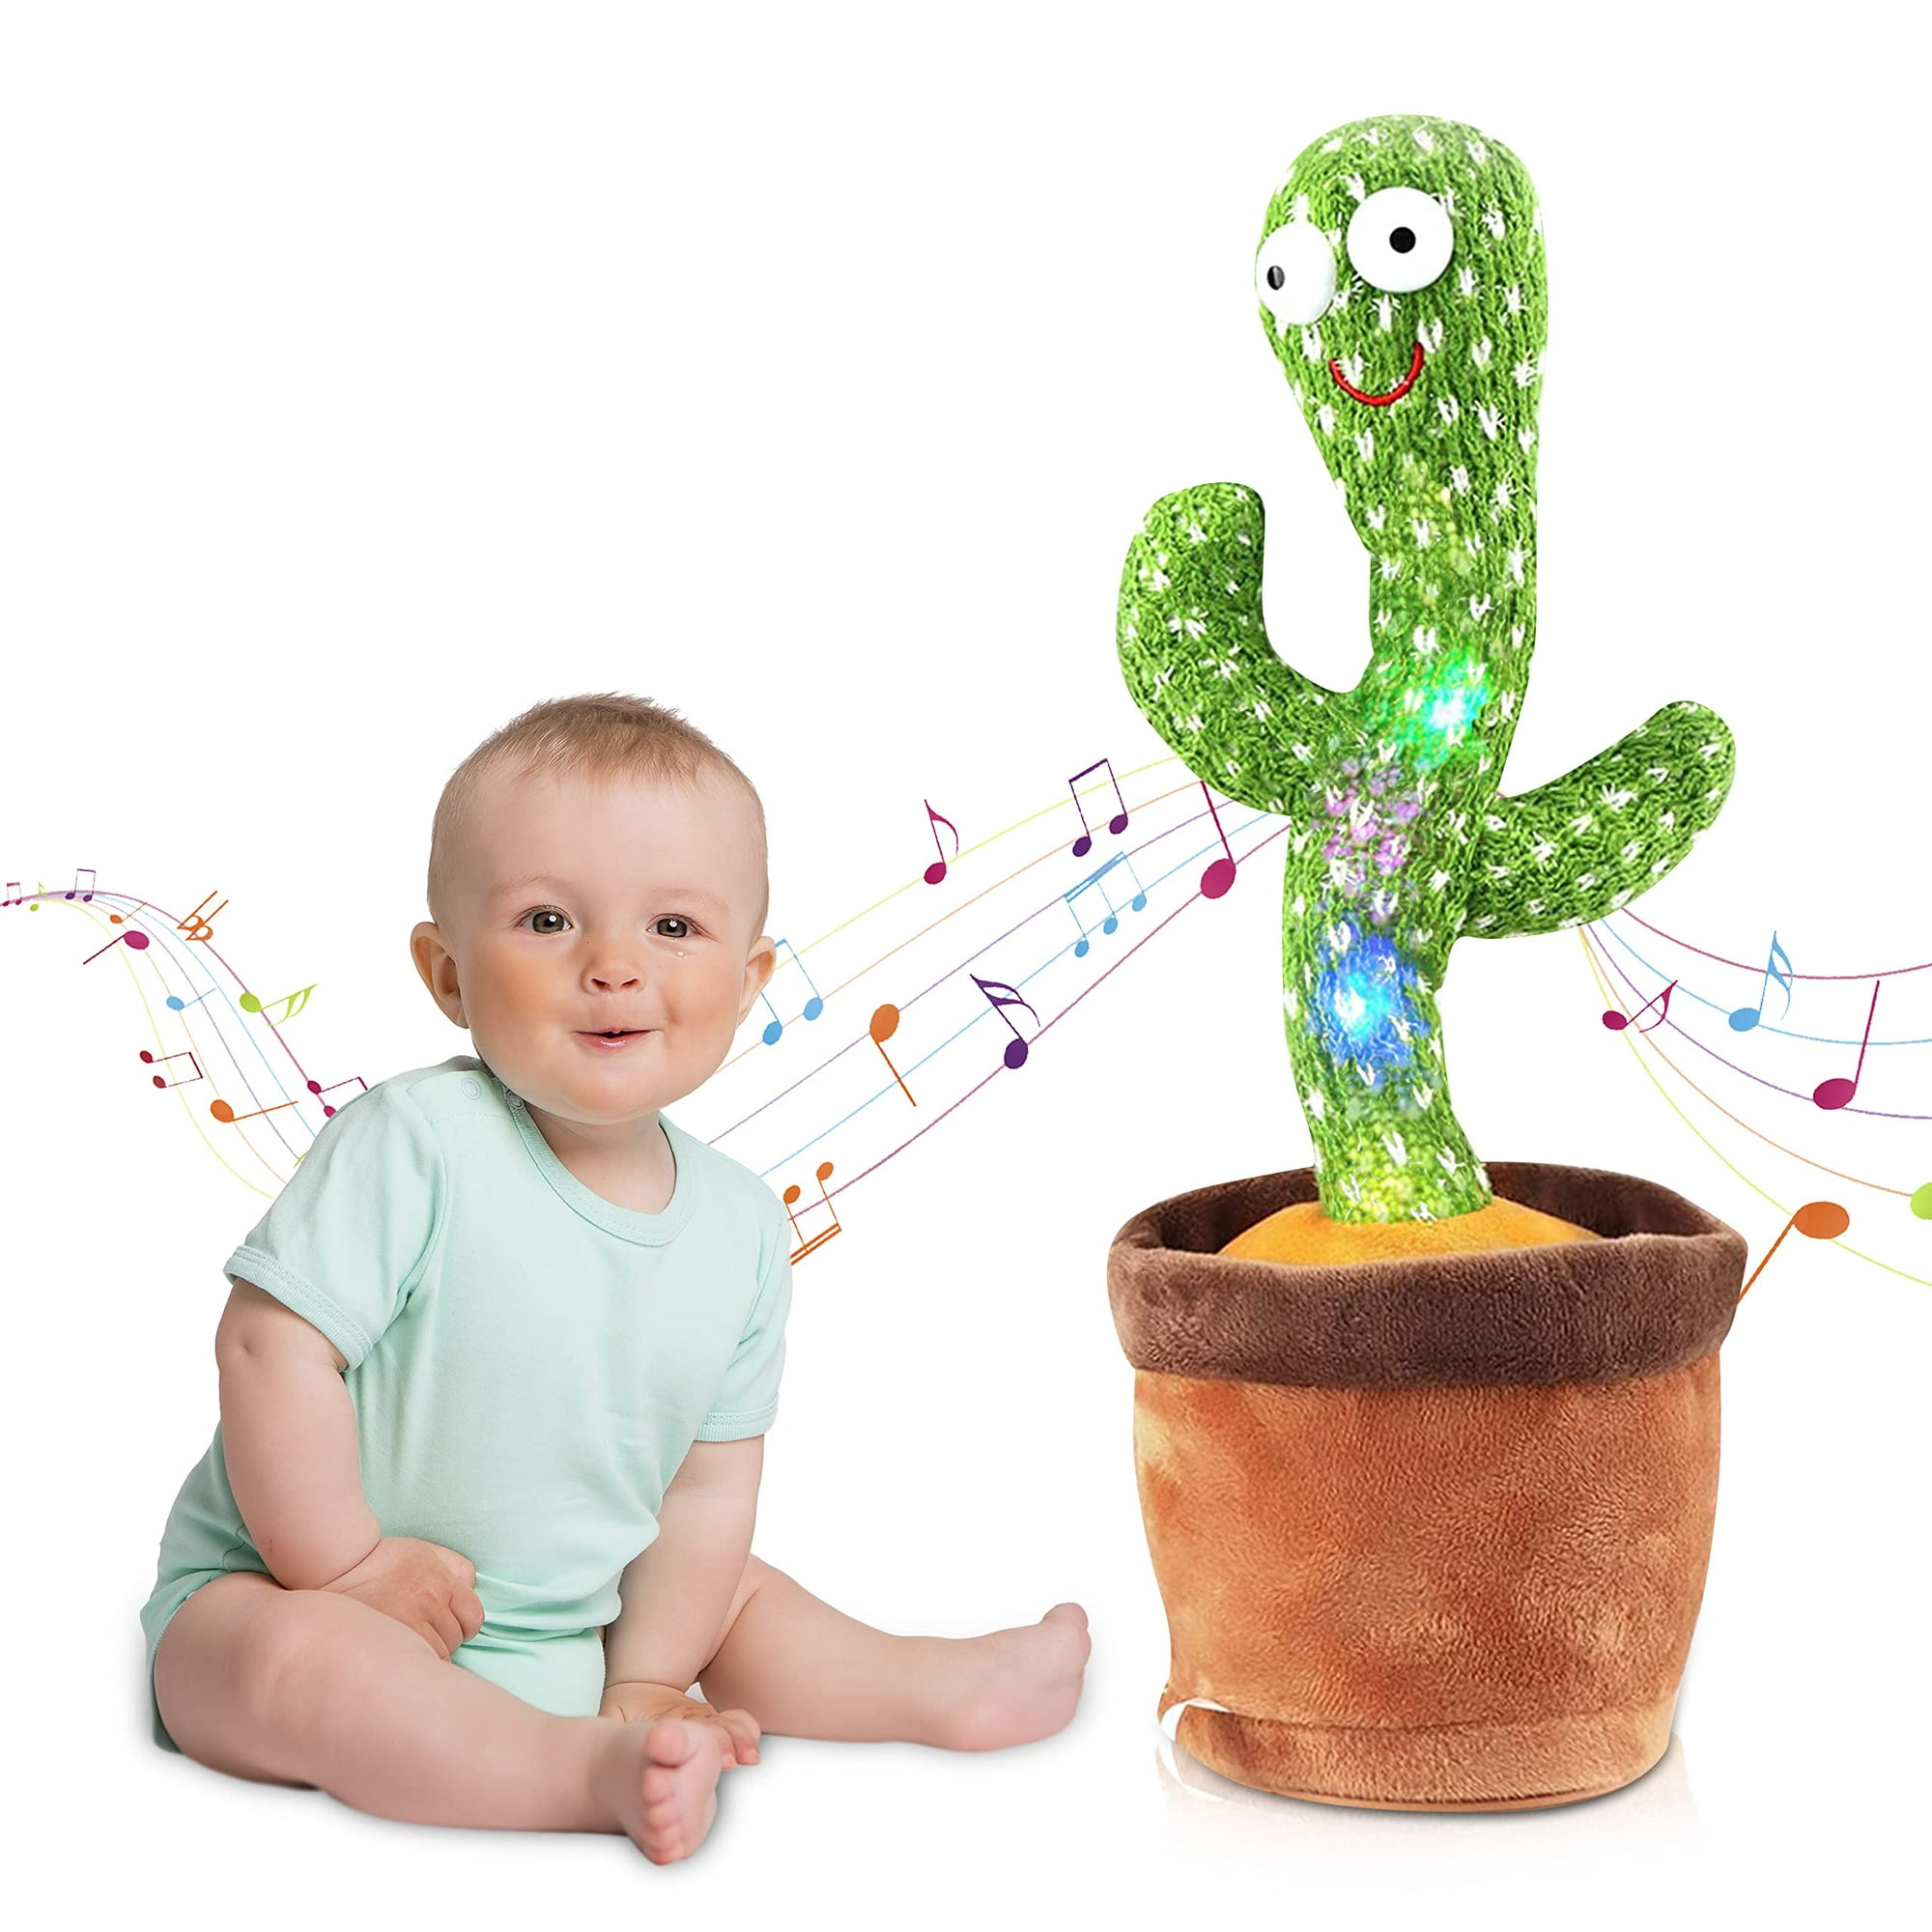 Juguete de cactus bailarín para bebés, niños y niñas, juguete de cactus  bailarín, repite lo que dices, juguetes con canciones en inglés, juguete de